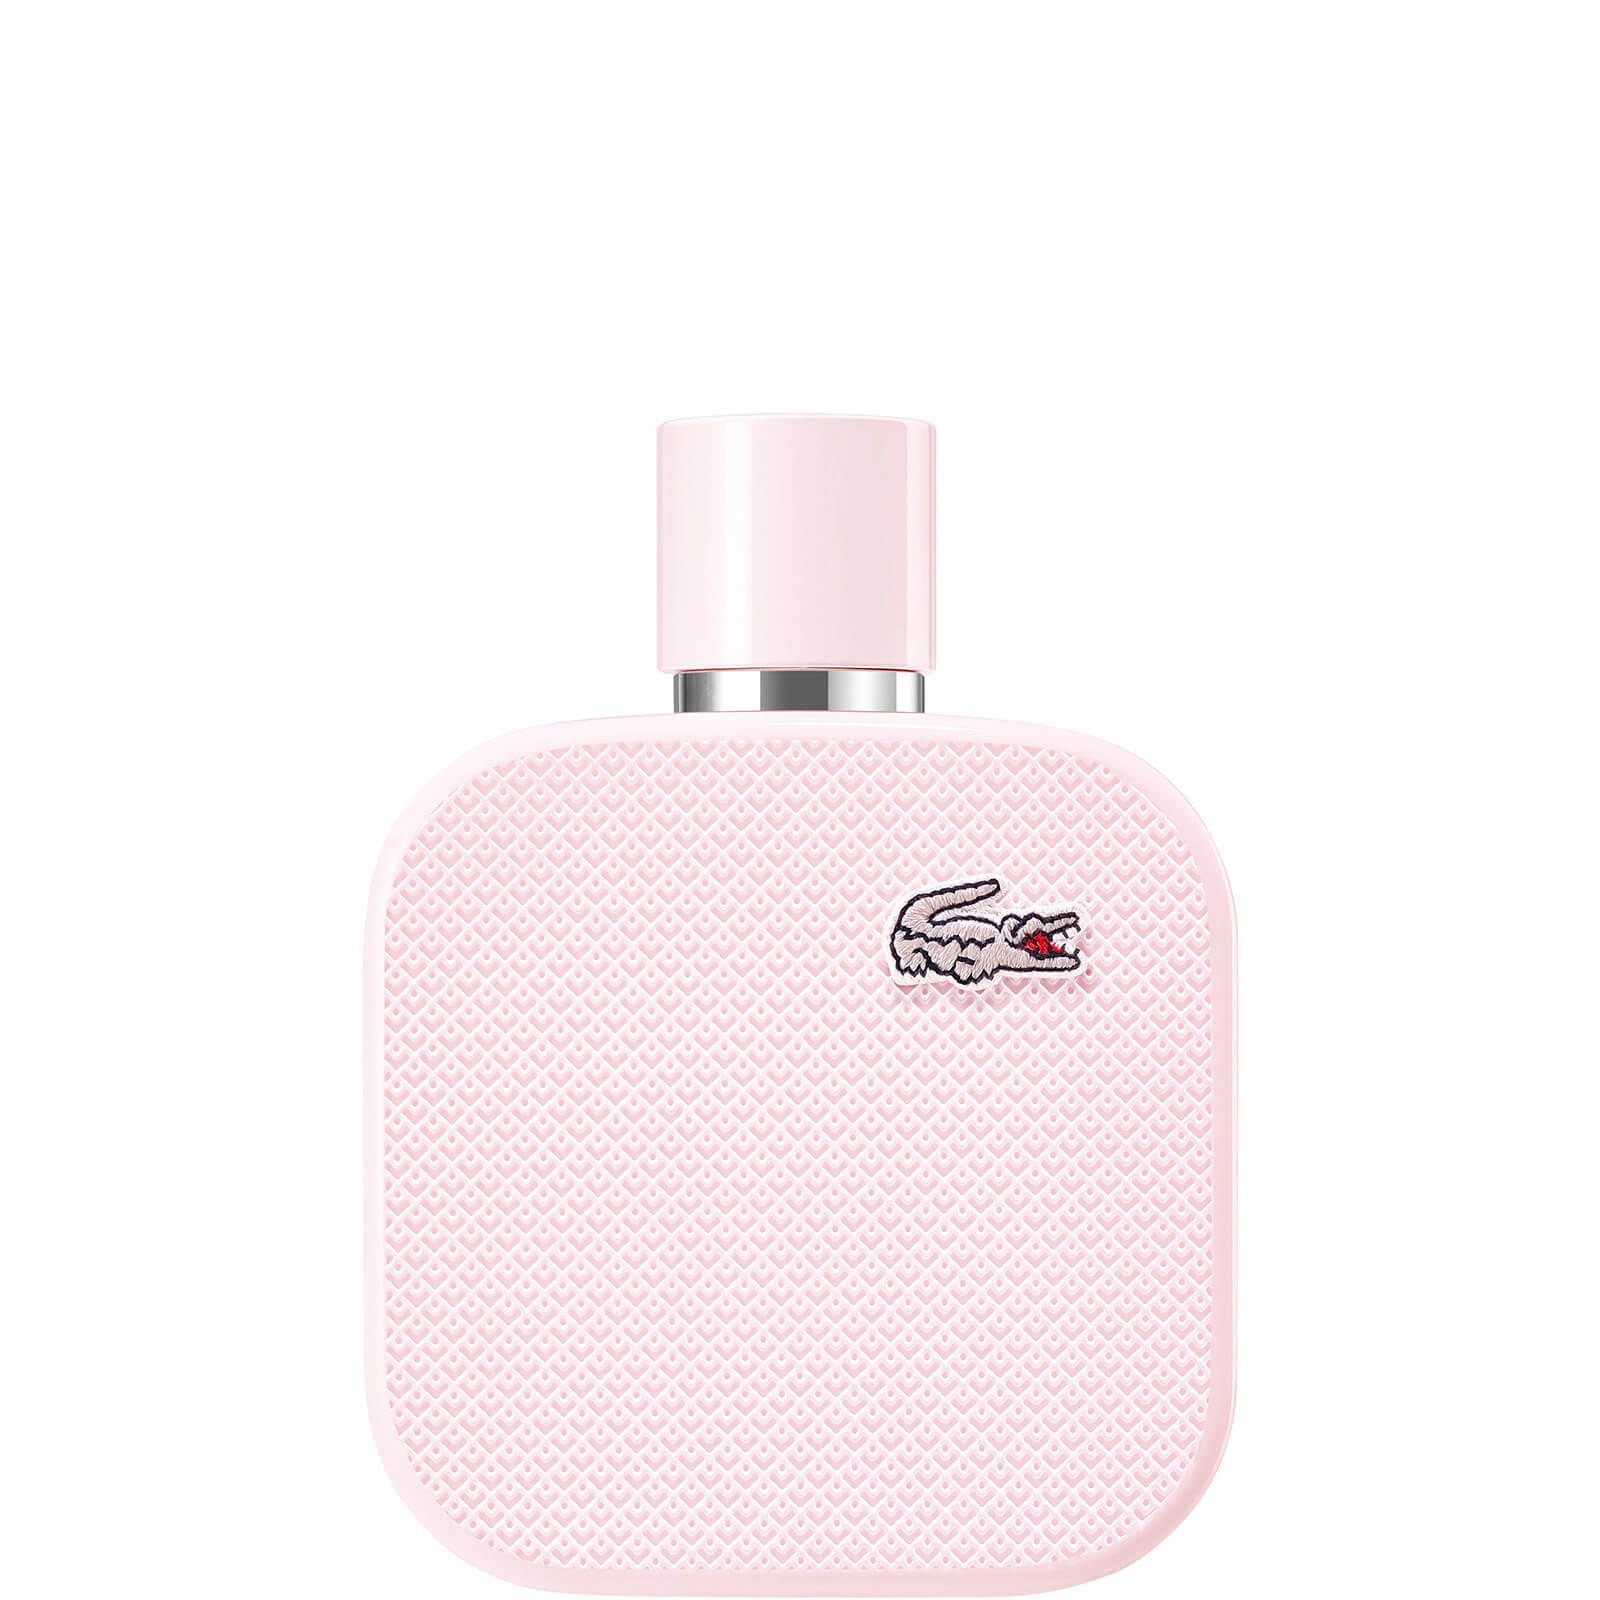 Image of Lacoste L.12.12 Sparkling Pour Elle Eau de Parfum 100ml